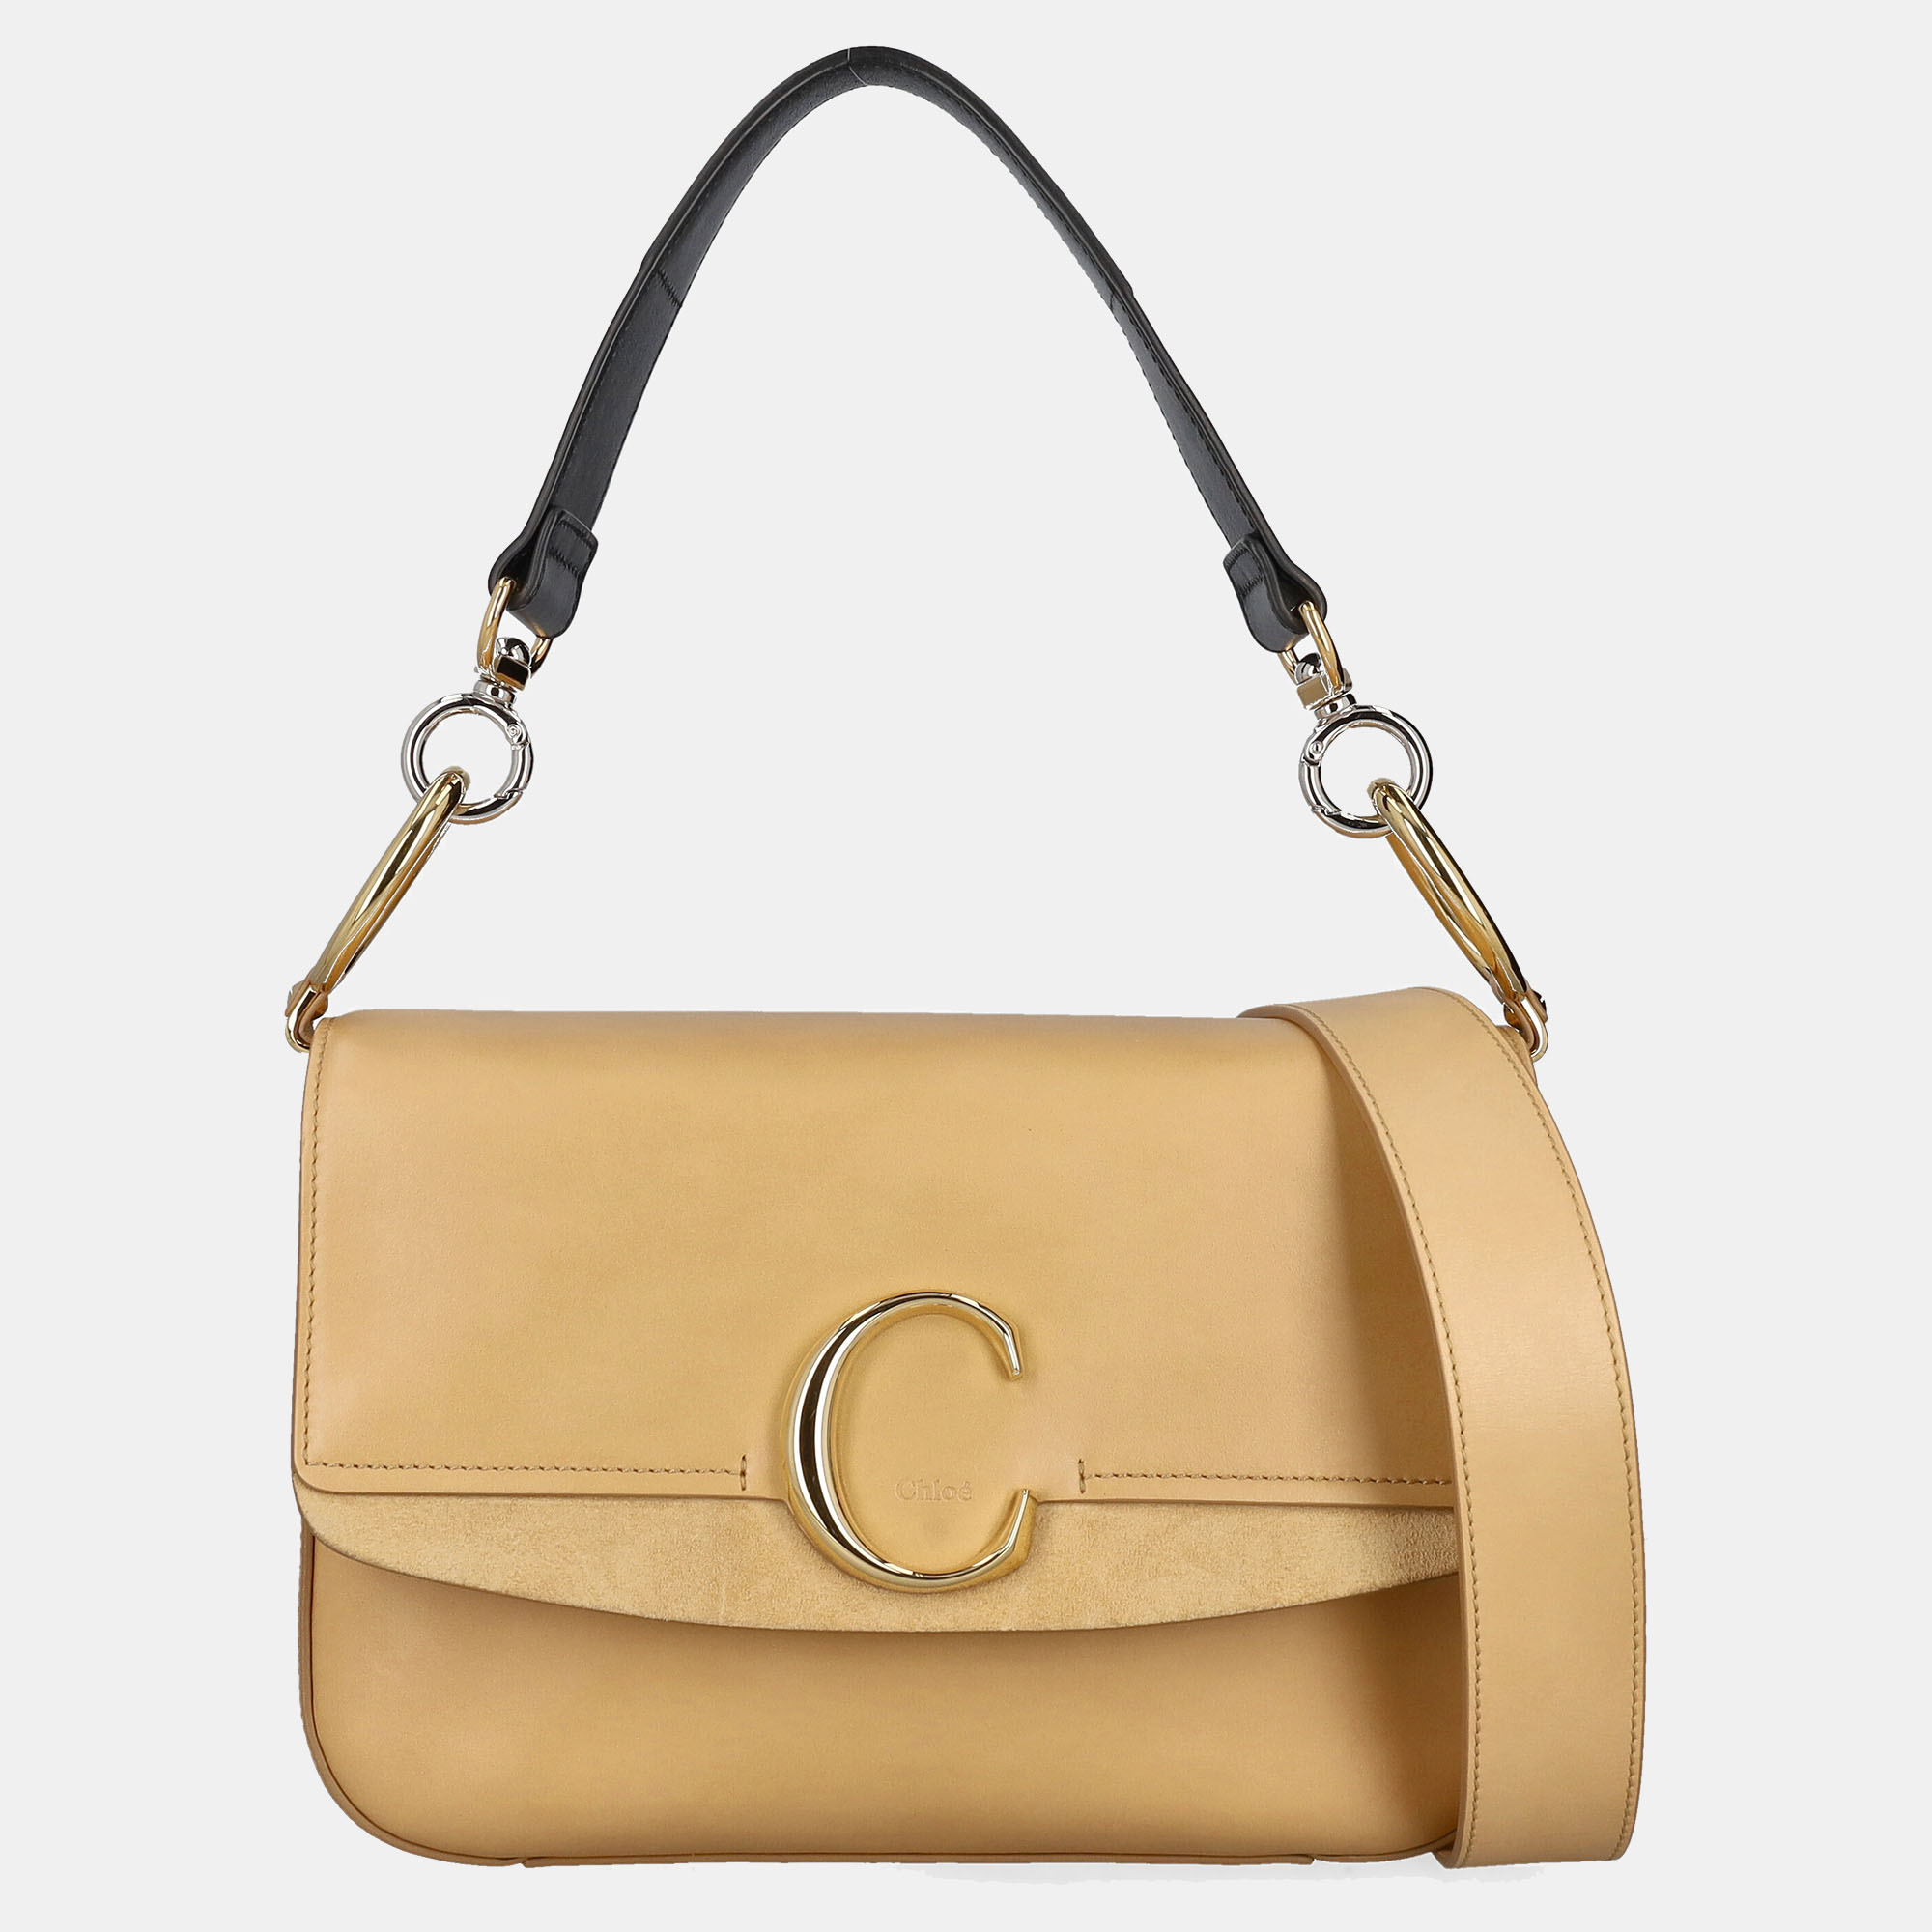 Chloe  Women's Leather Cross Body Bag - Beige - One Size